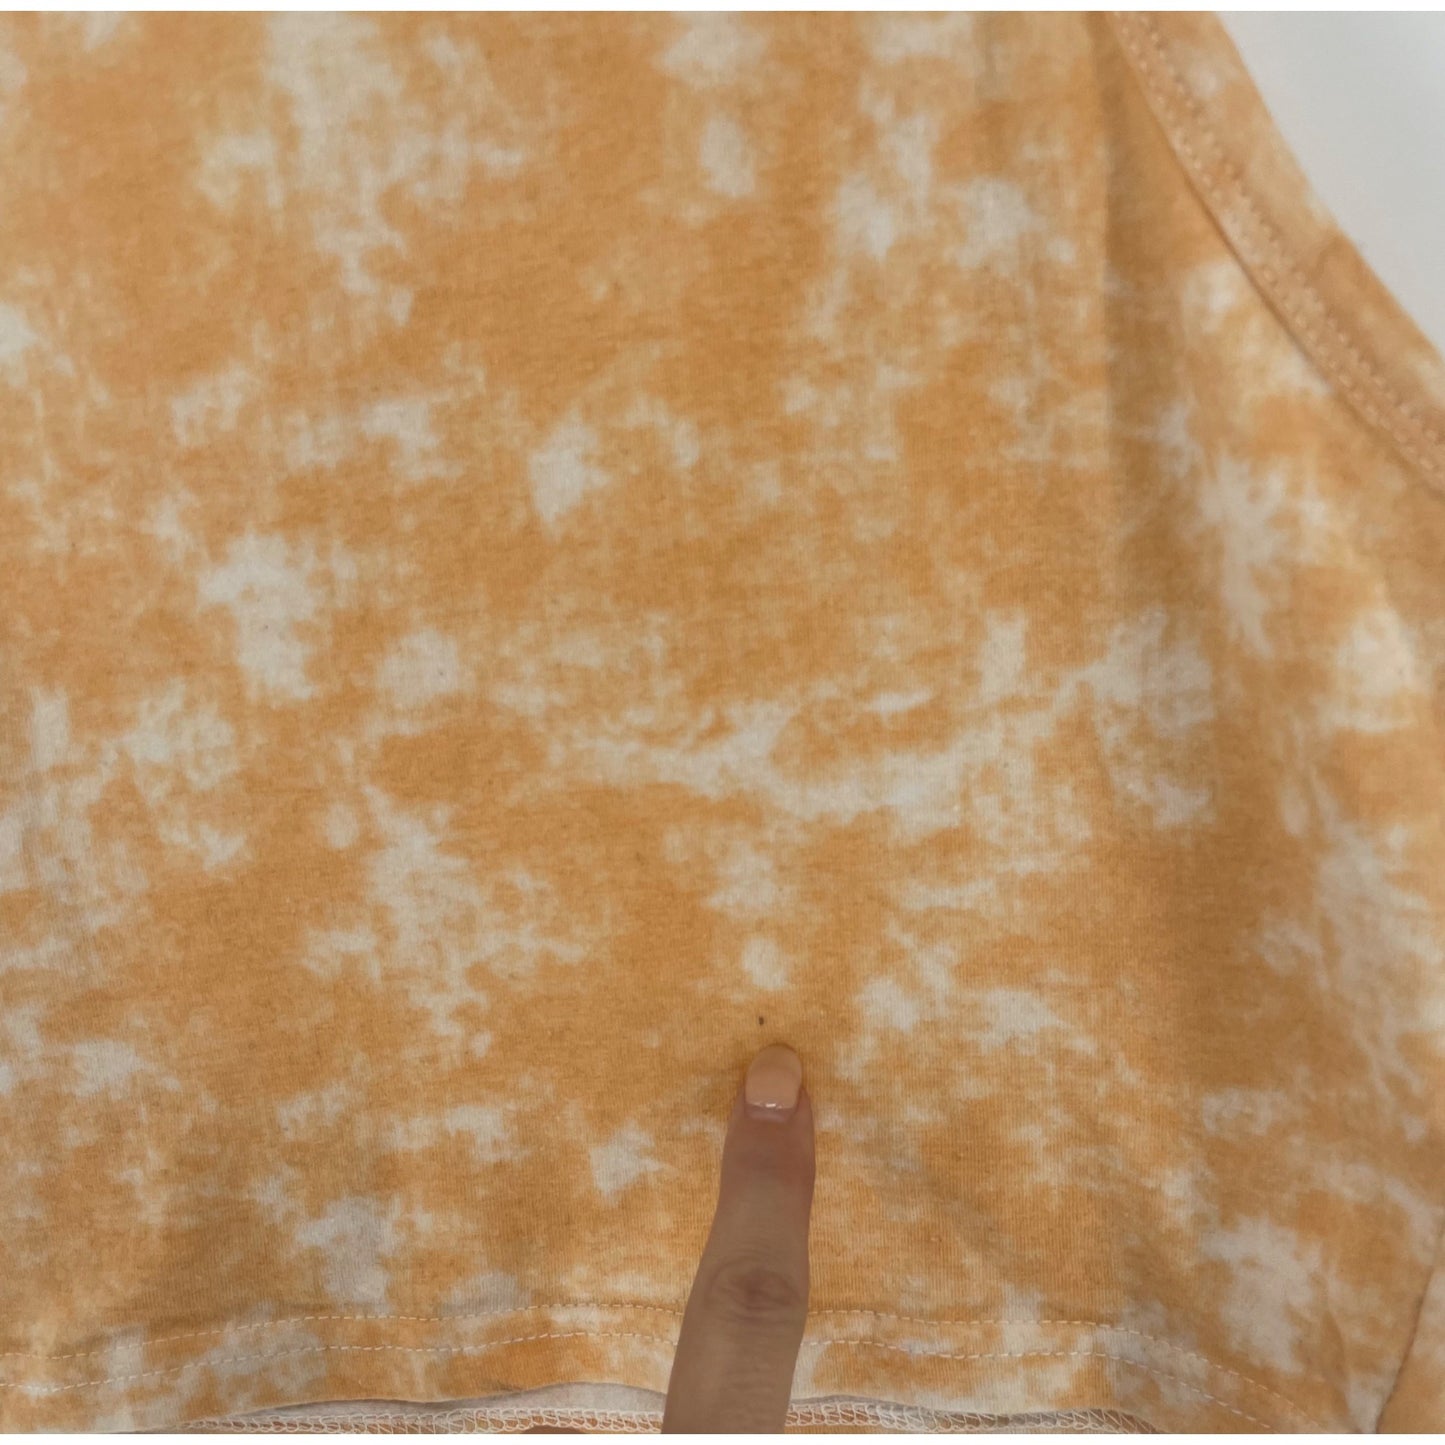 Women's Size Small Sherbet Orange & White Spaghetti Strap Tie Dye Crop Top